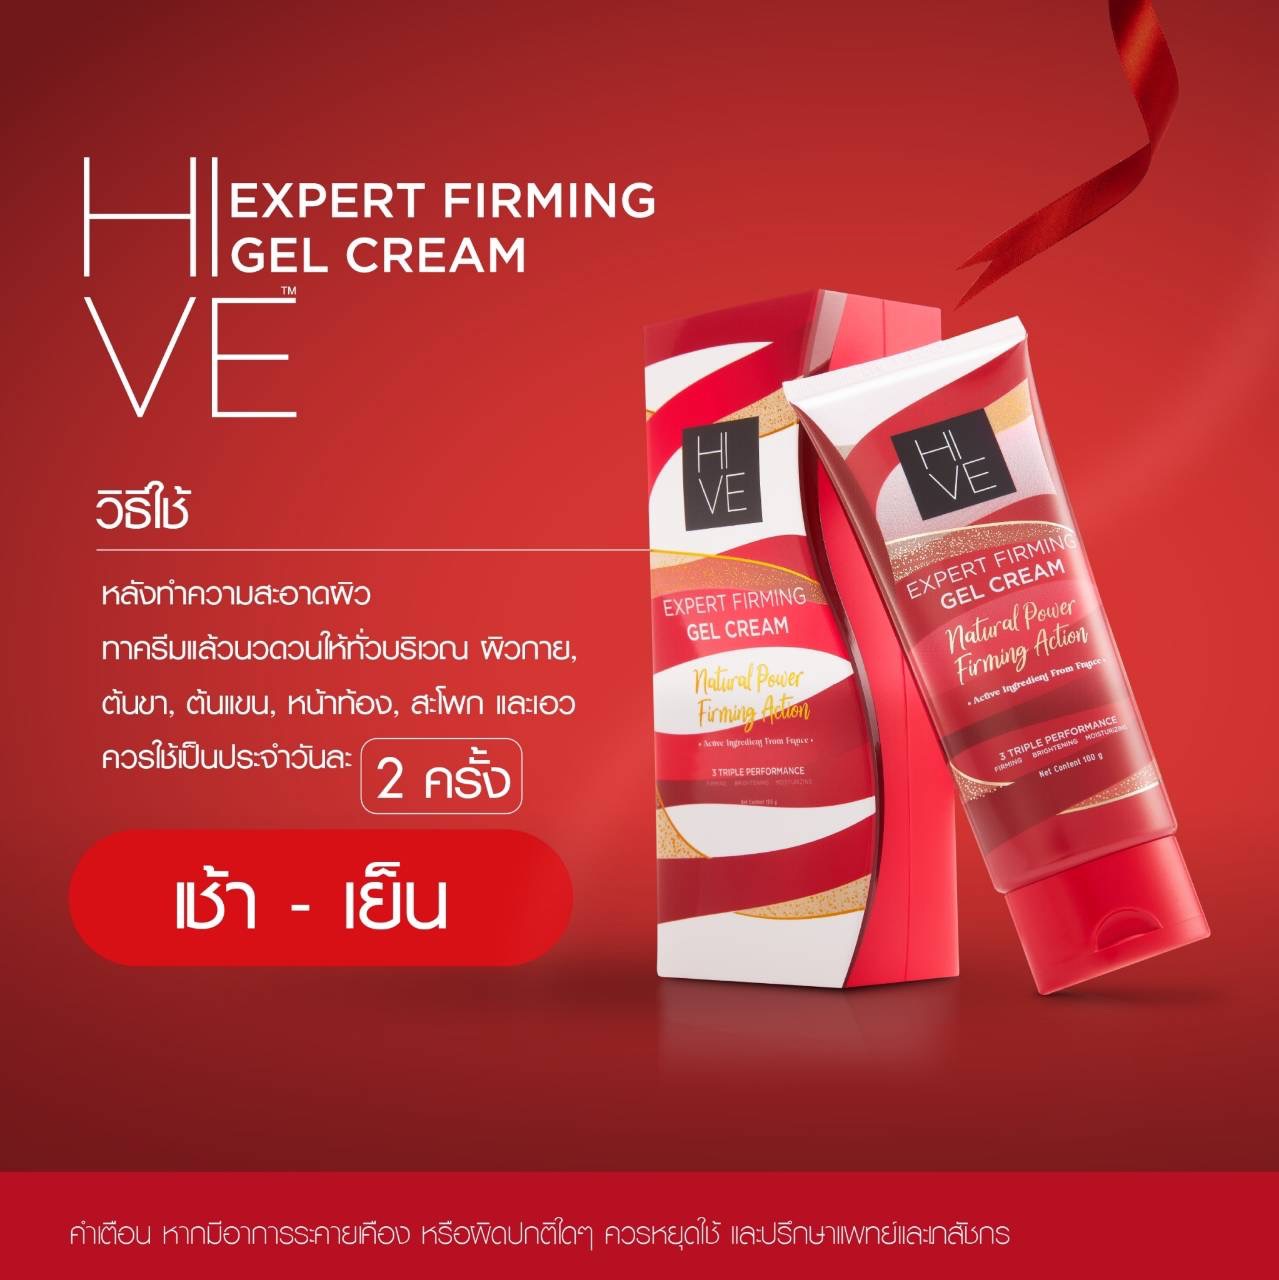 Hive Expert Firming Gel Cream เจลลดเซลลูไลท์ HIVE | Lazada.co.th